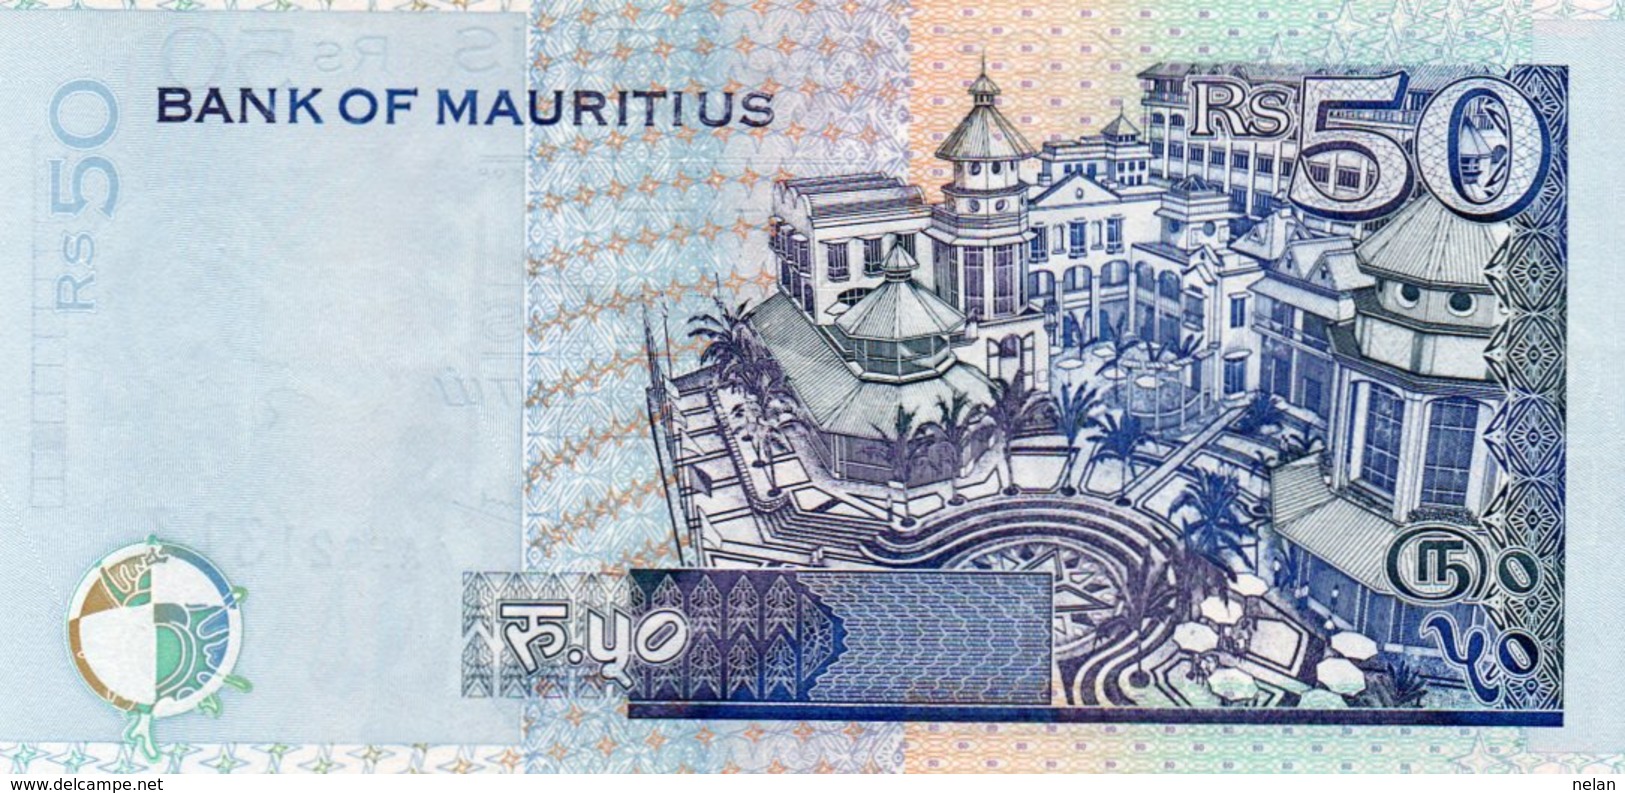 MAURITIUS 50 RUPEES  2001 P-50  UNC - Mauritius